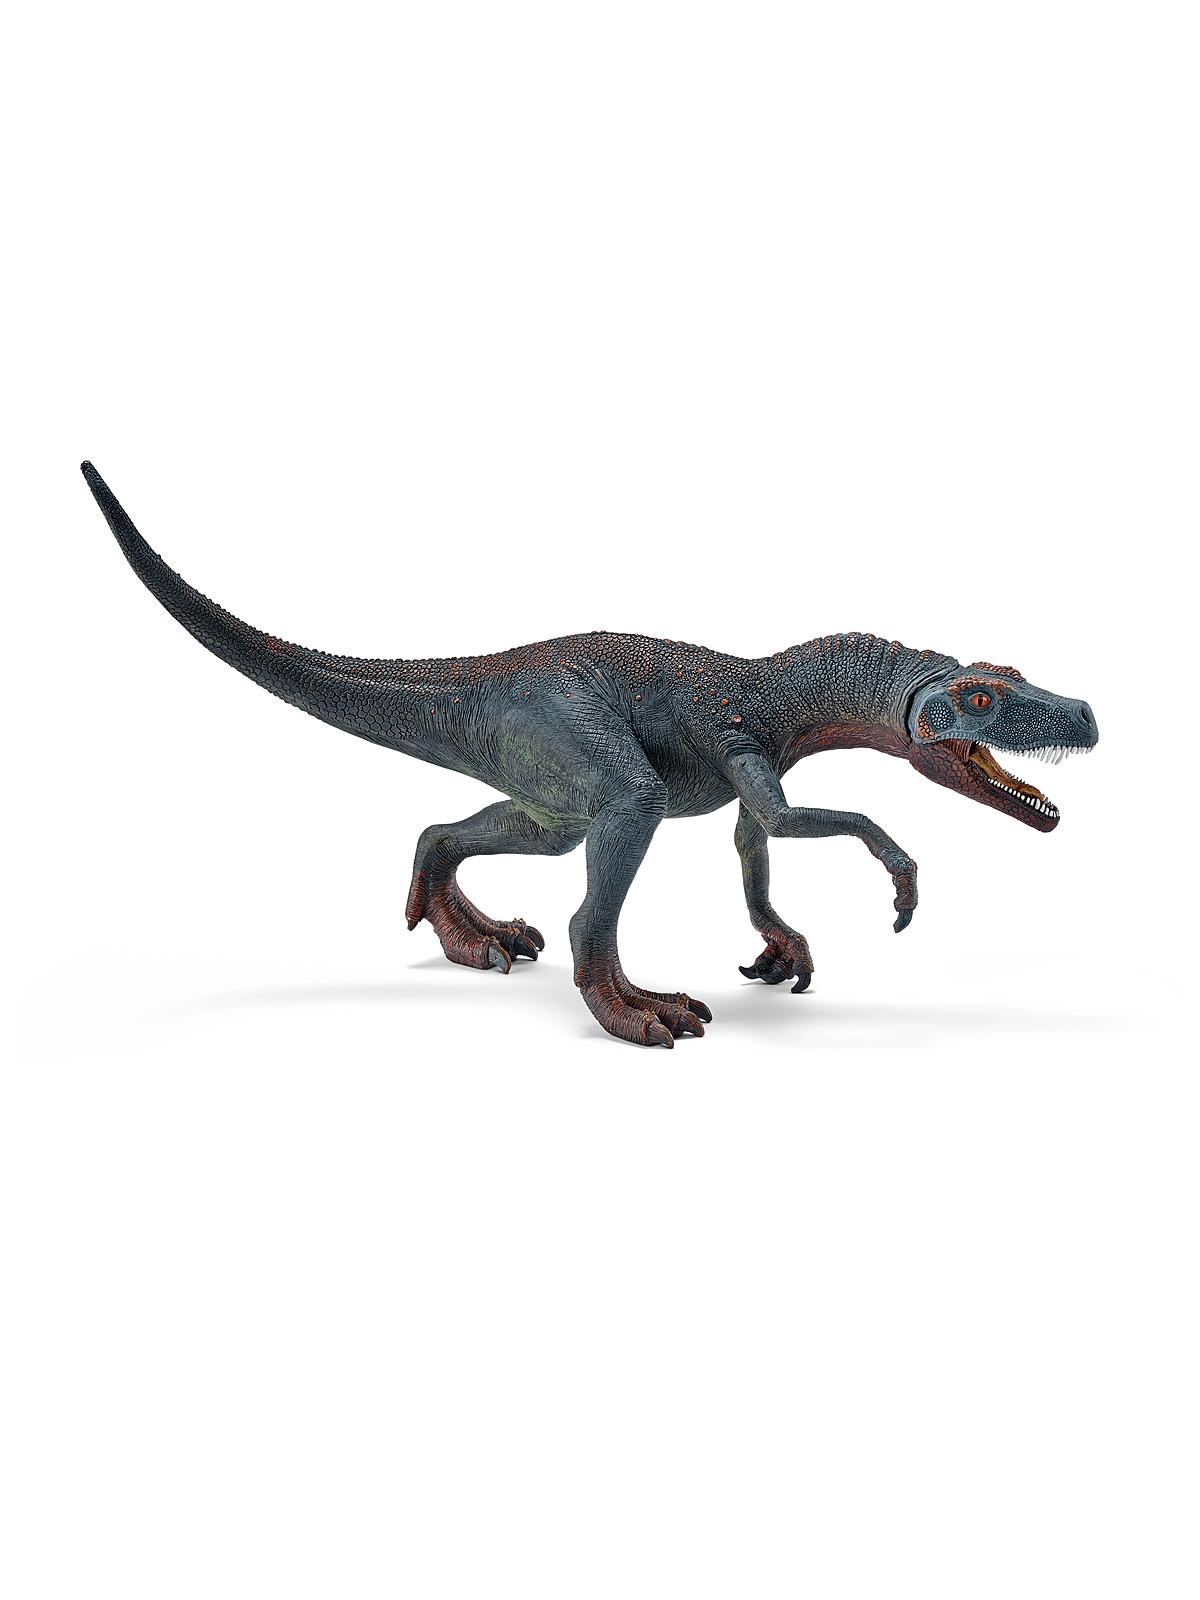 Dinosaurs Herrerasaurus